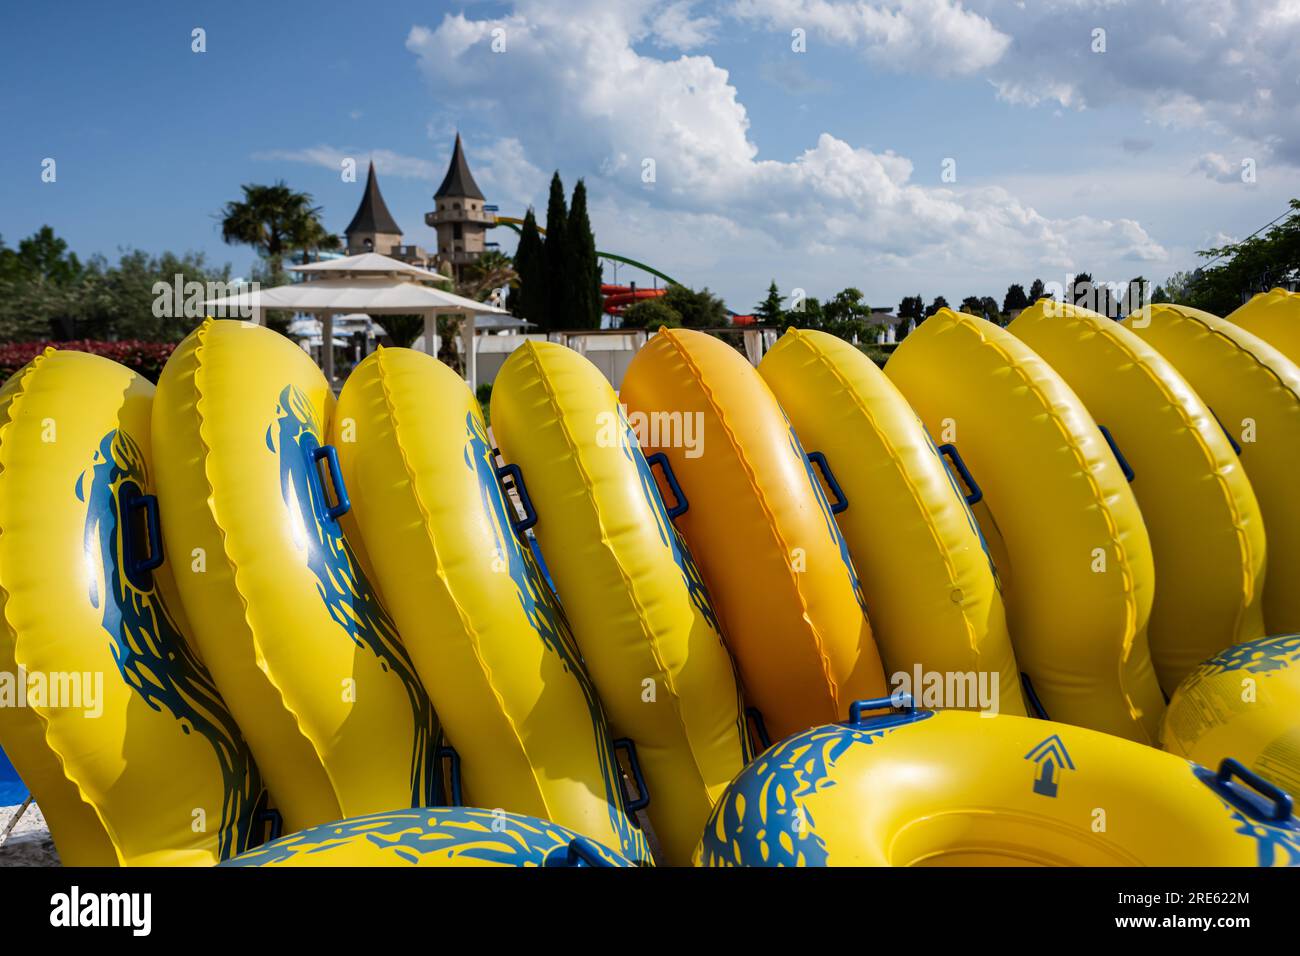 Barche gonfiabili gialle per nuotare nel parco in una giornata di sole Foto Stock